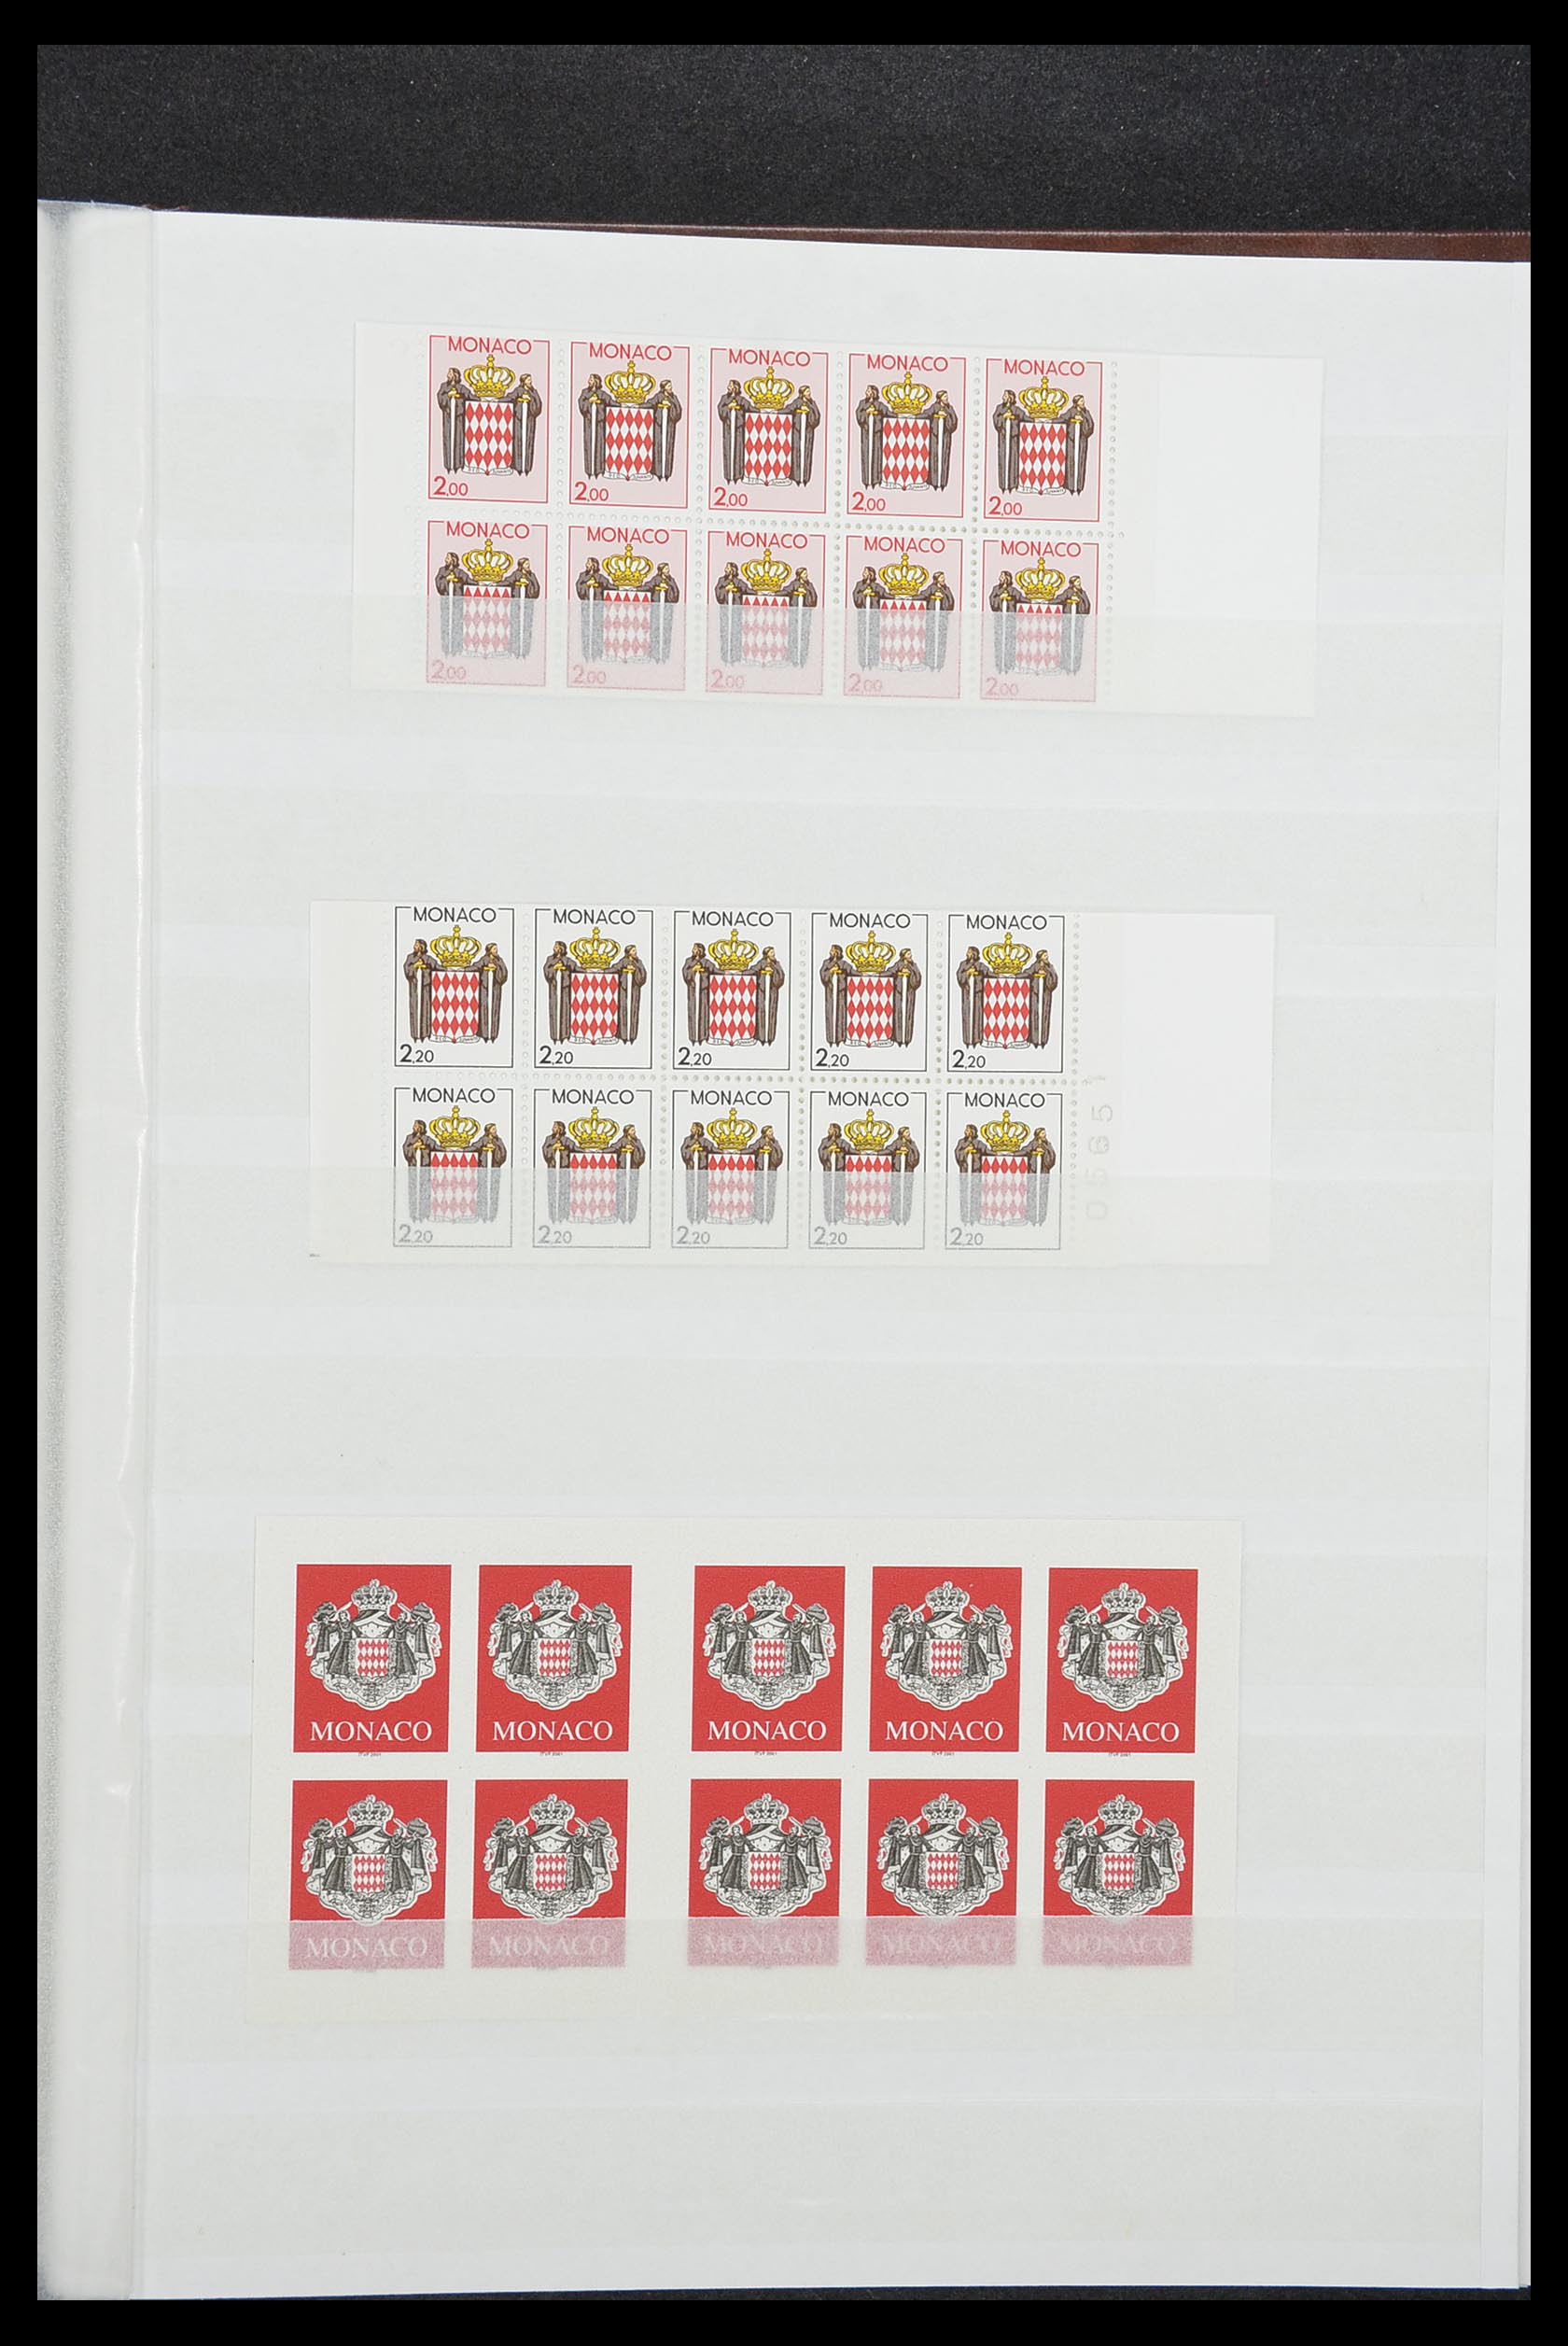 33833 042 - Stamp collection 33833 Monaco souvenir sheets 1979-2015.